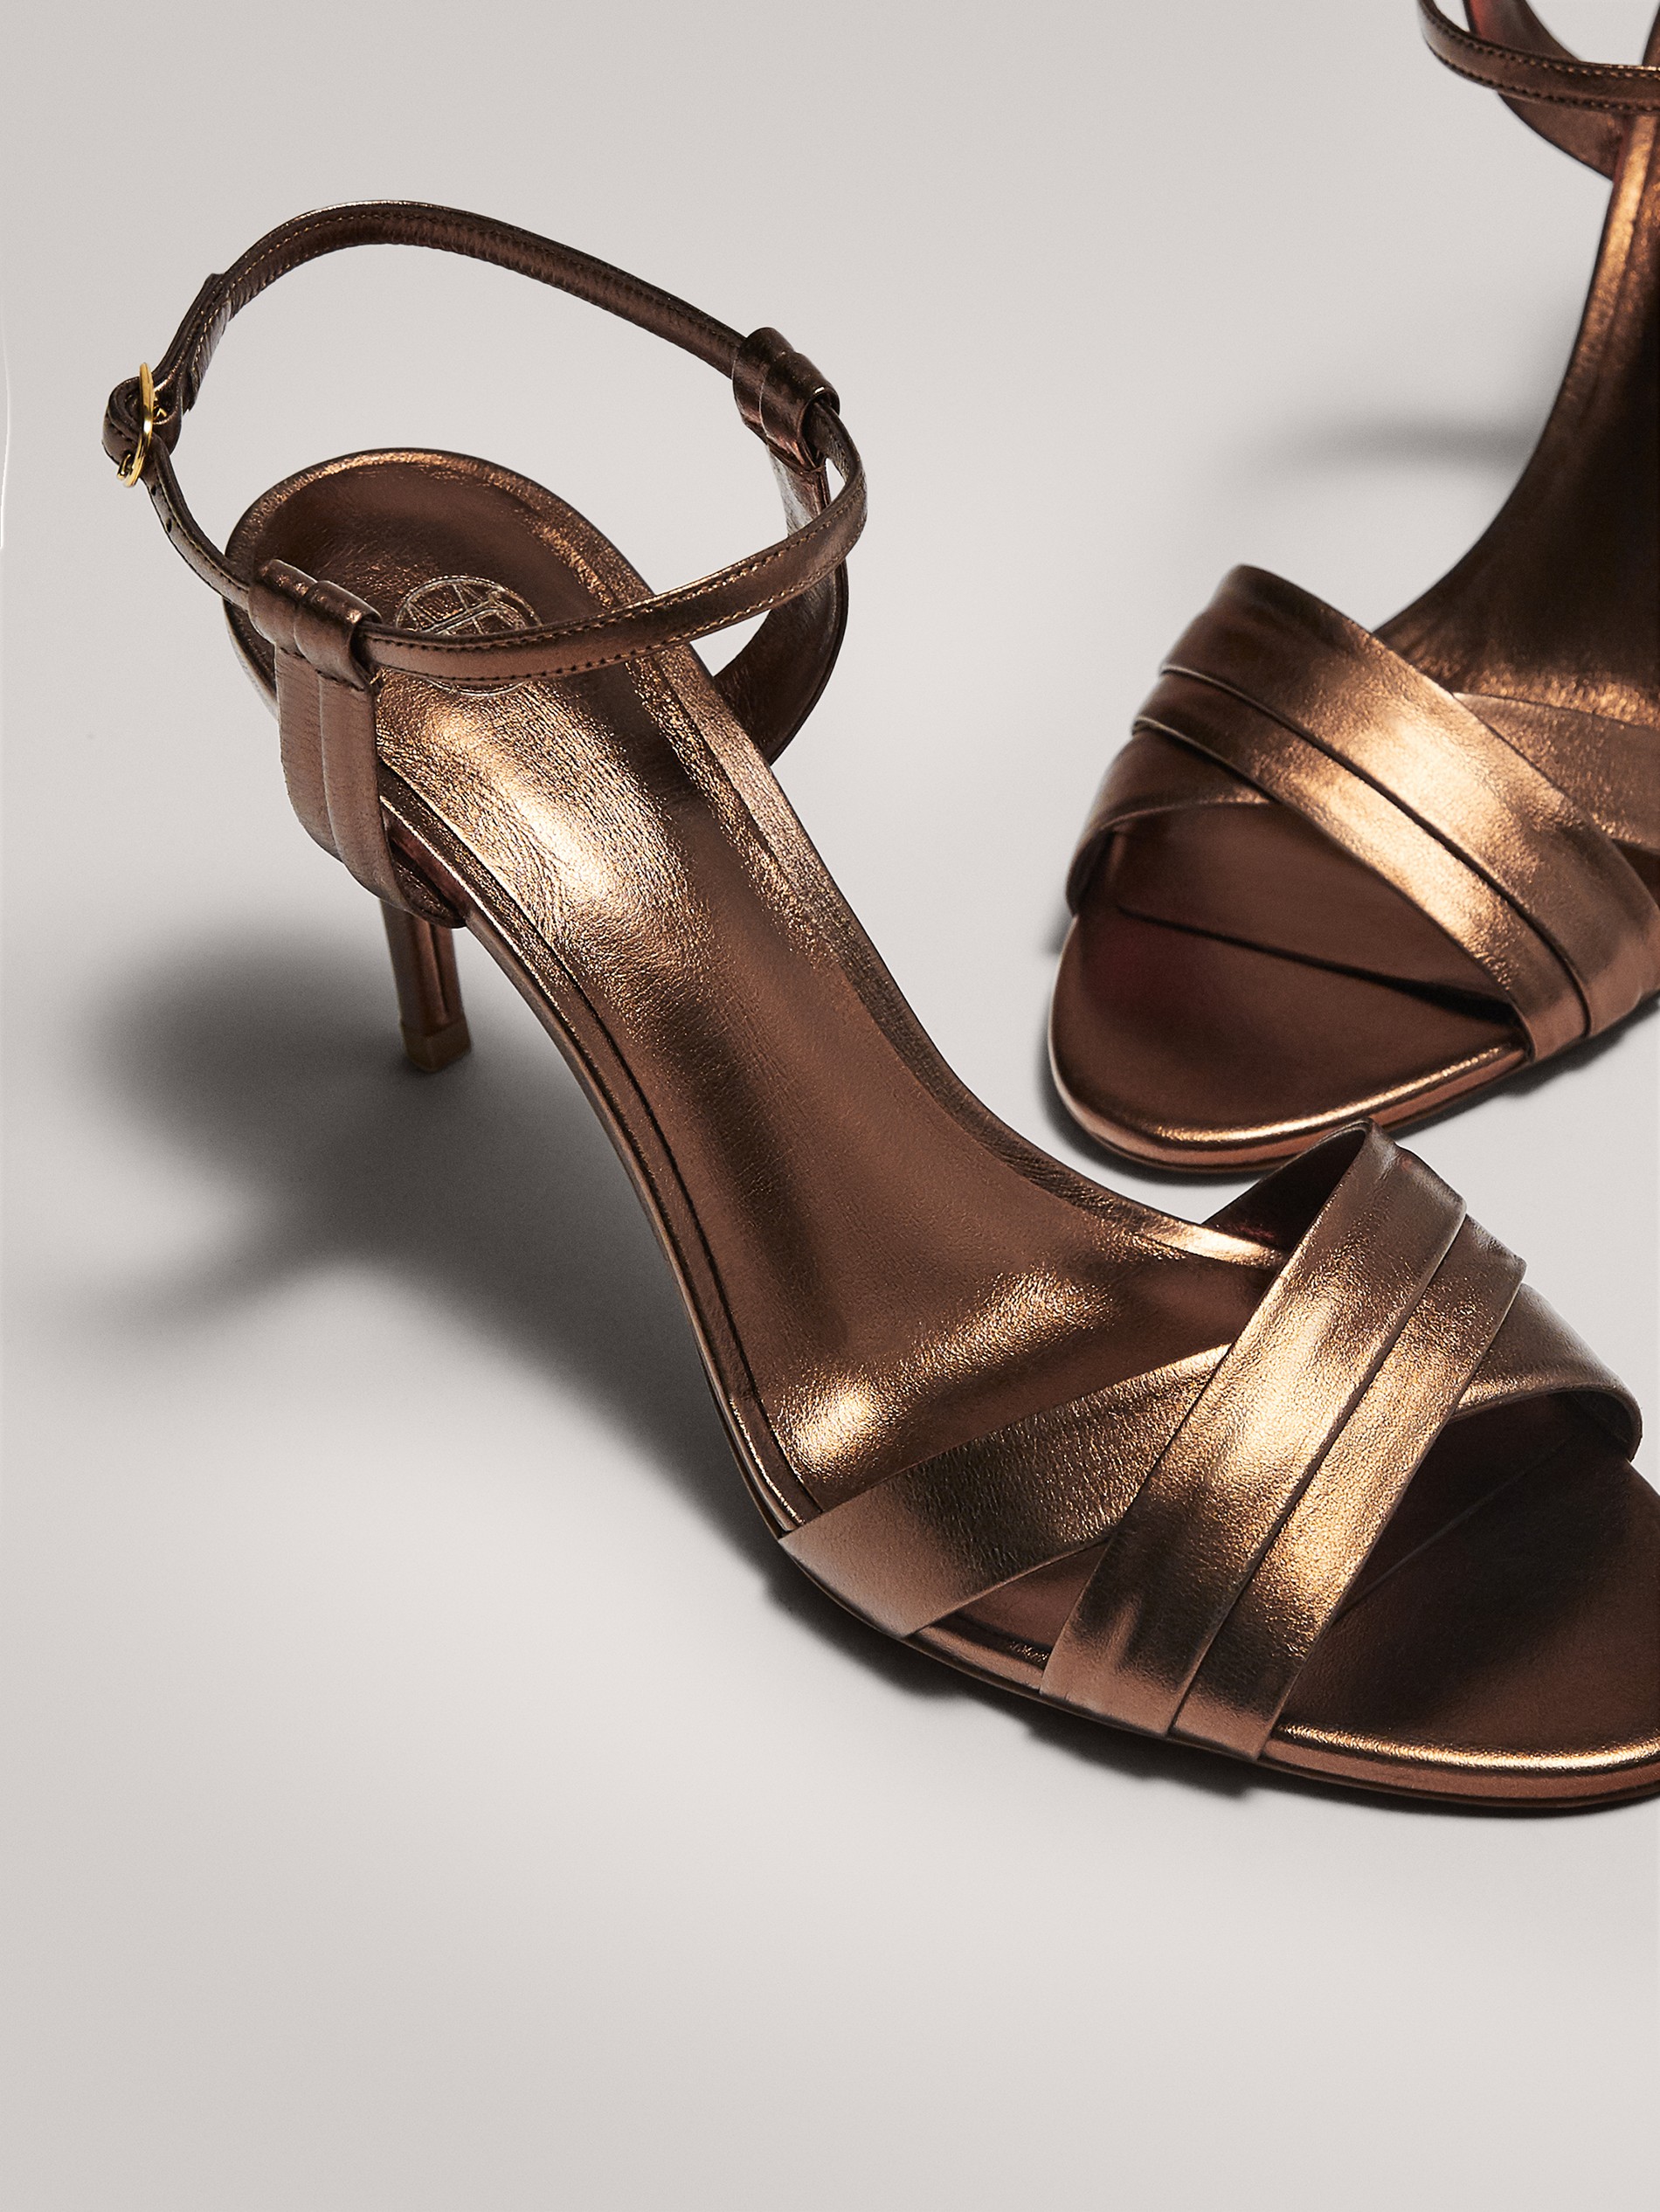 bronze sandal heels